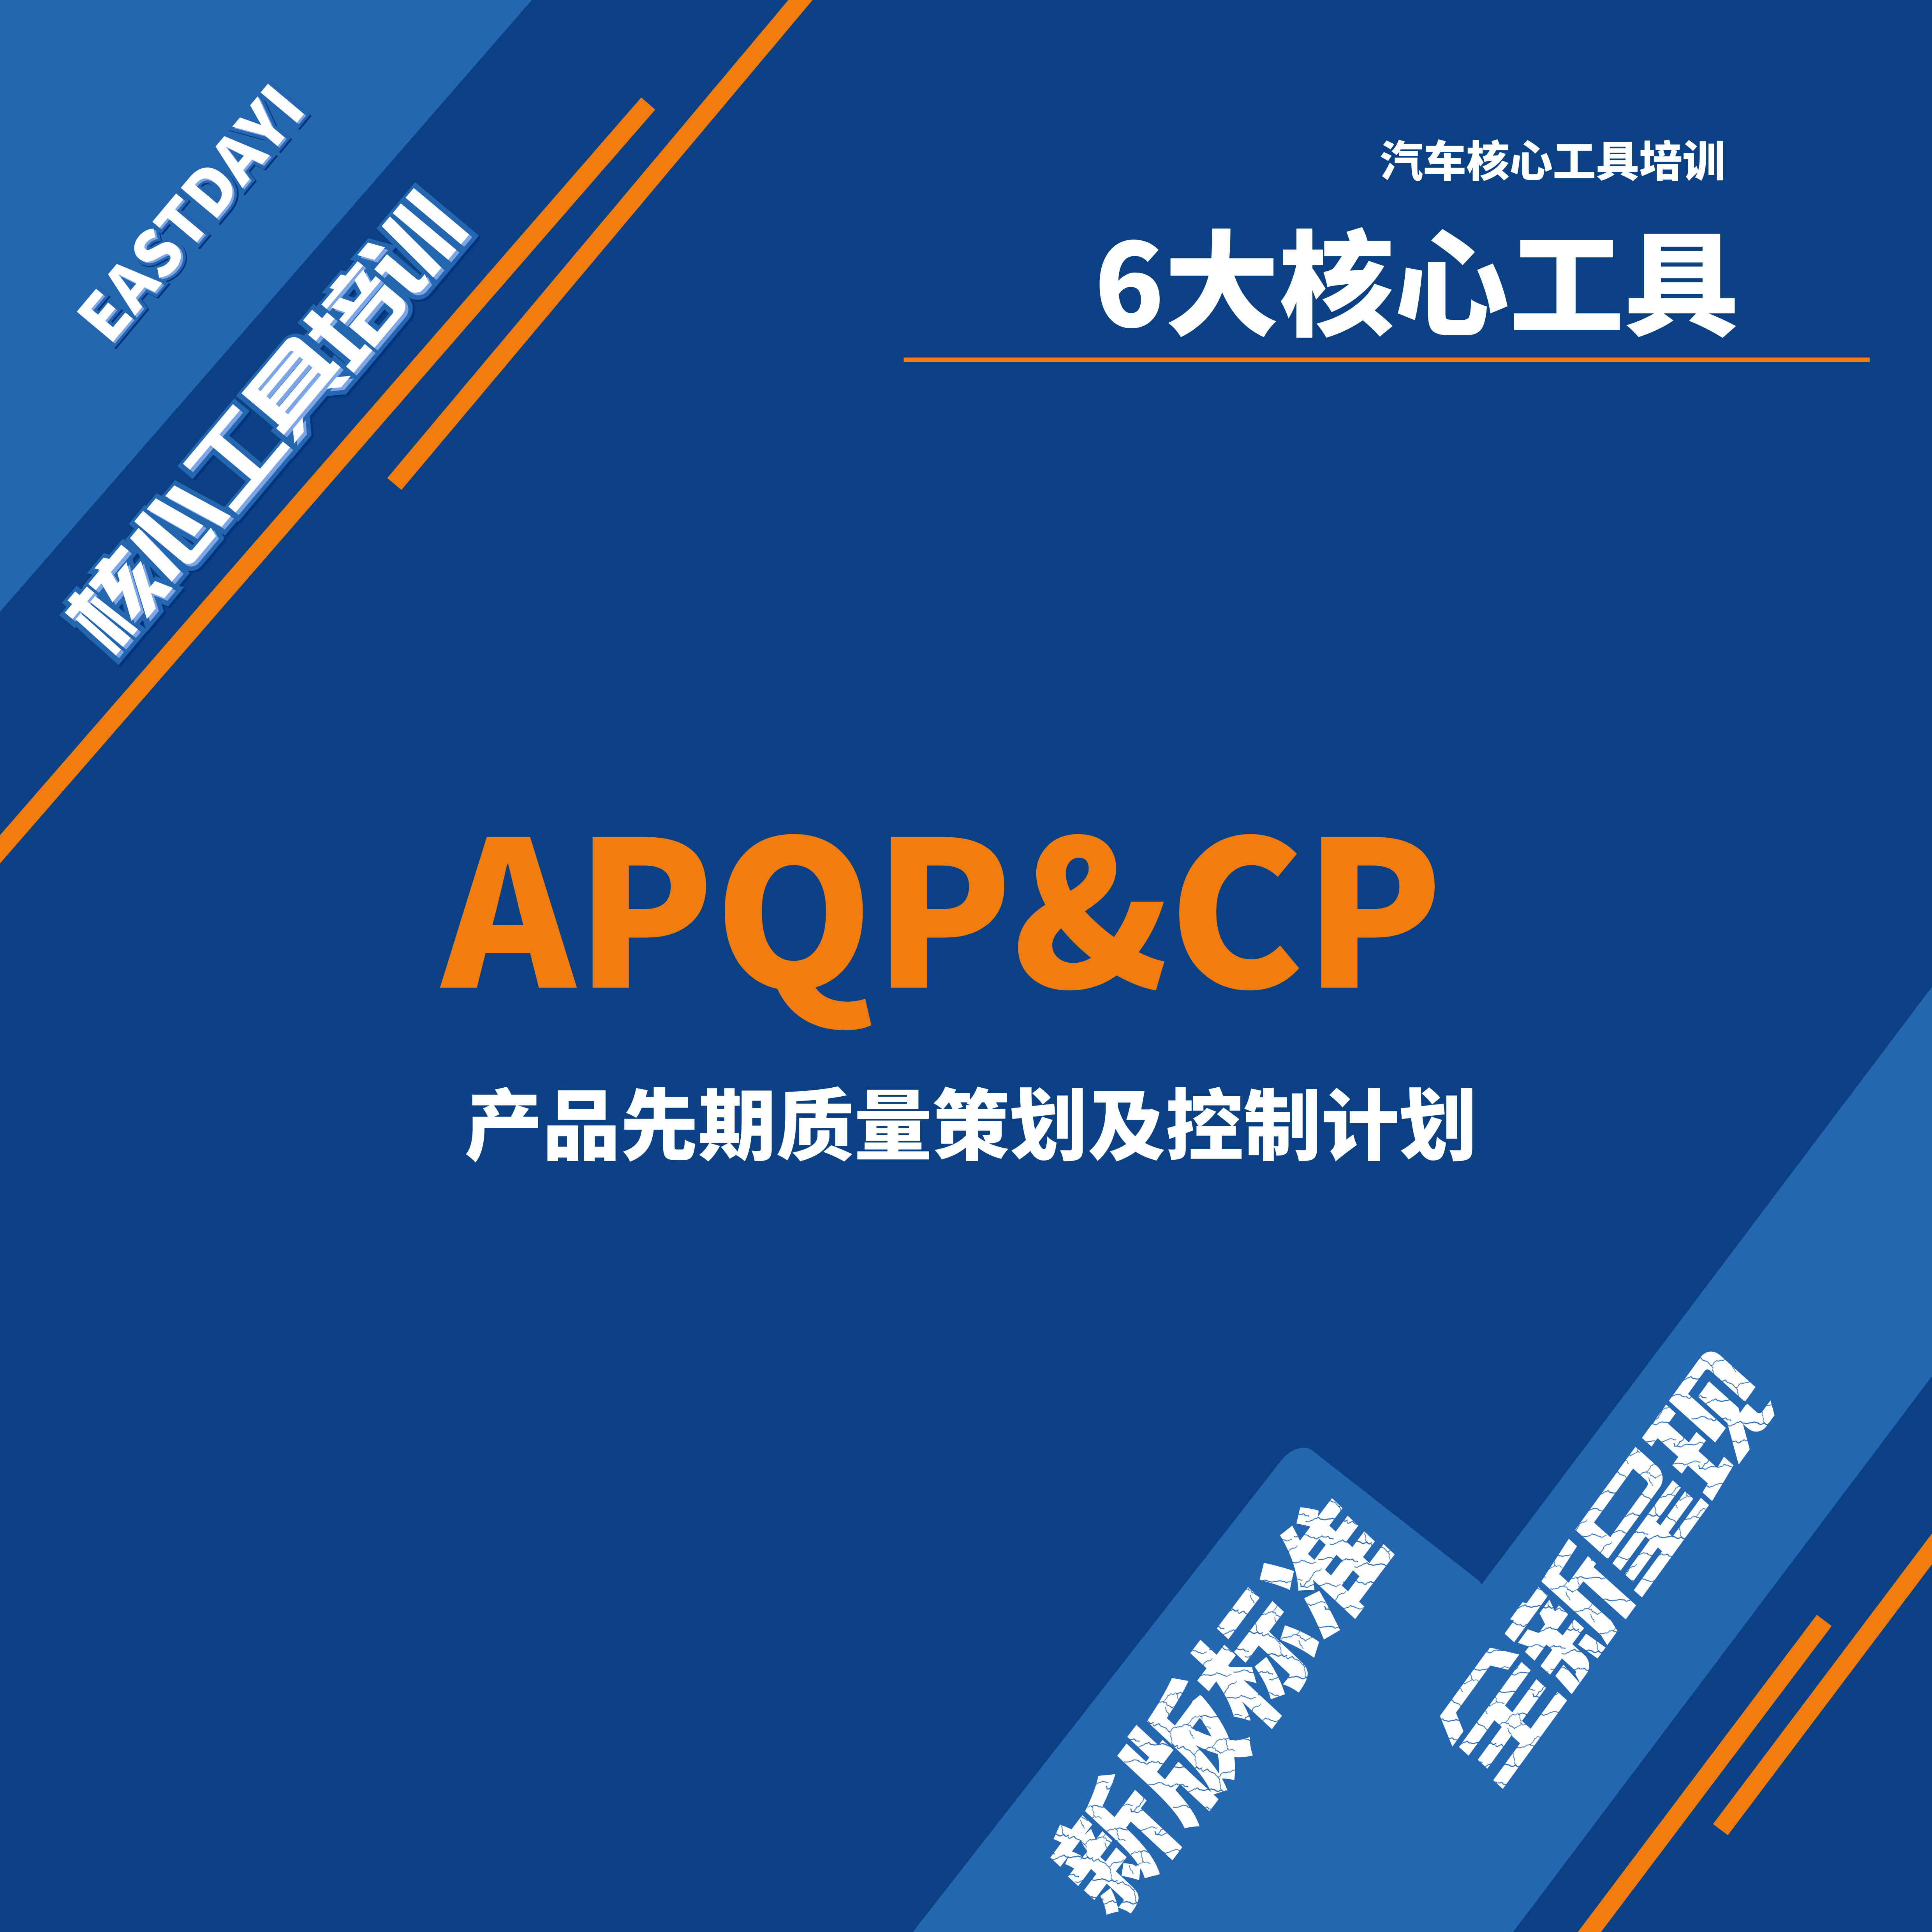 新版APQP&CP培训